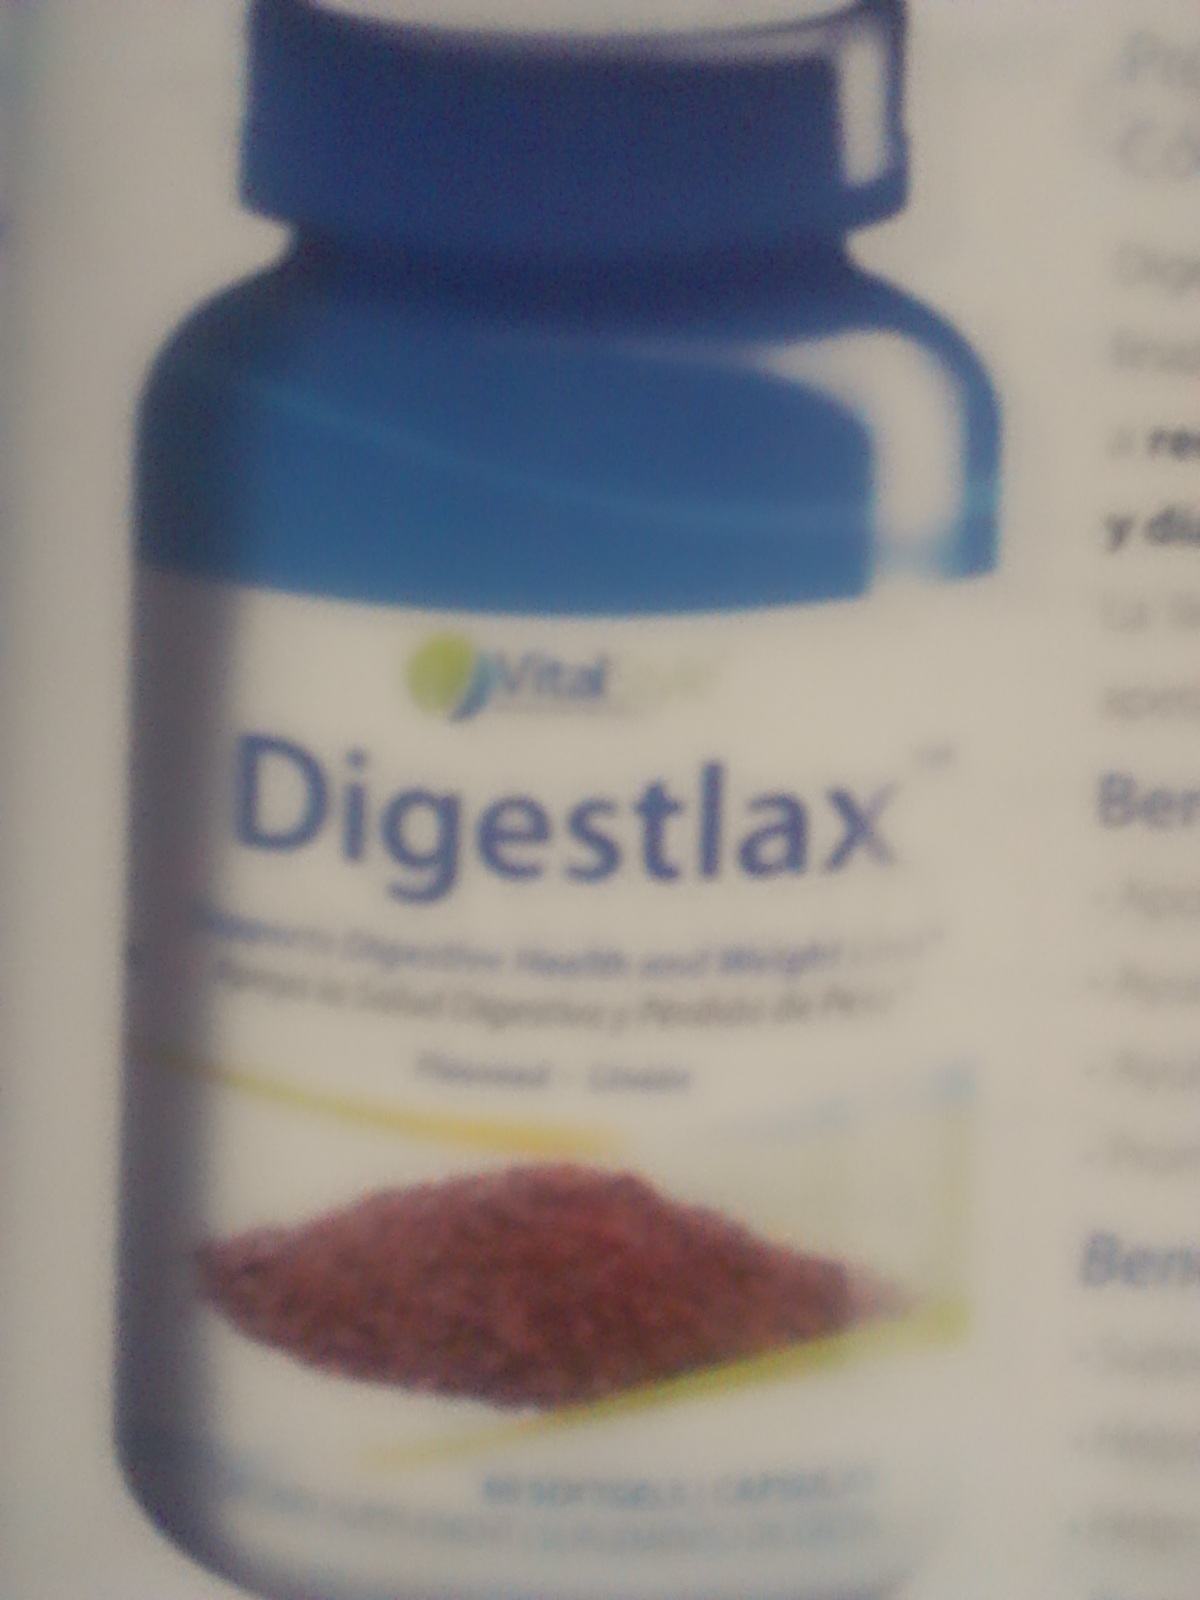 Digestlax™